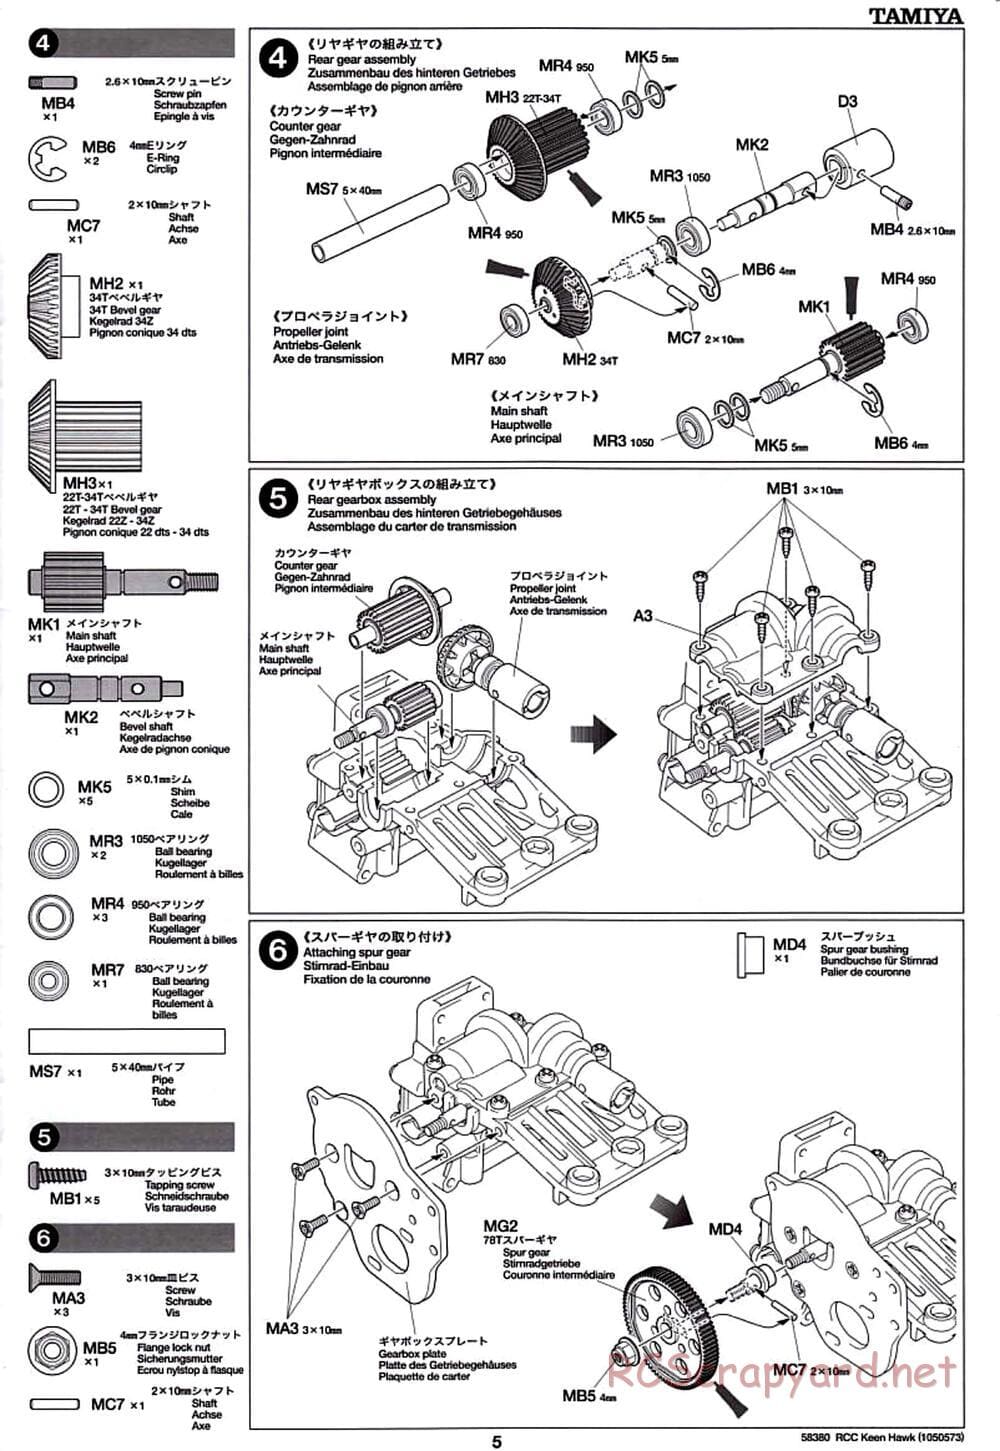 Tamiya - Keen Hawk Chassis - Manual - Page 5